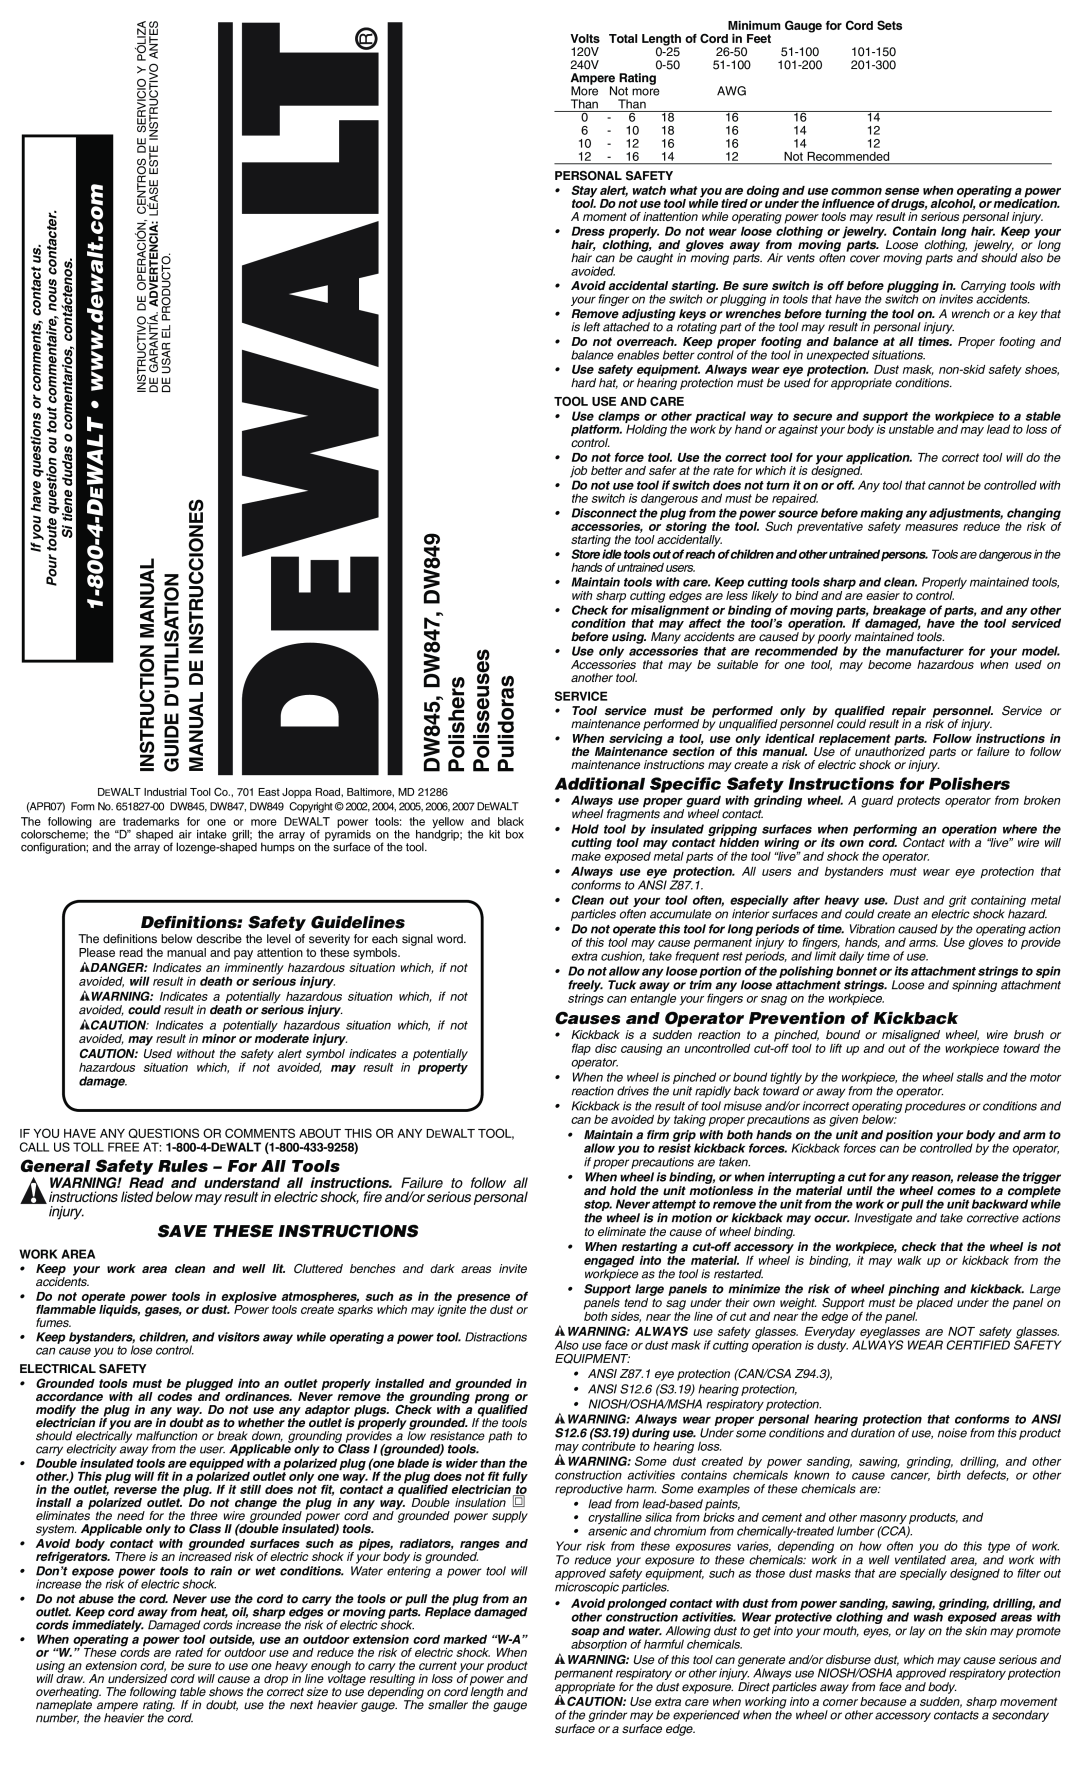 Epson DW847 instruction manual Dutilisationguide, Instruccionesdemanual, Manualinstruction, Definitions Safety Guidelines 